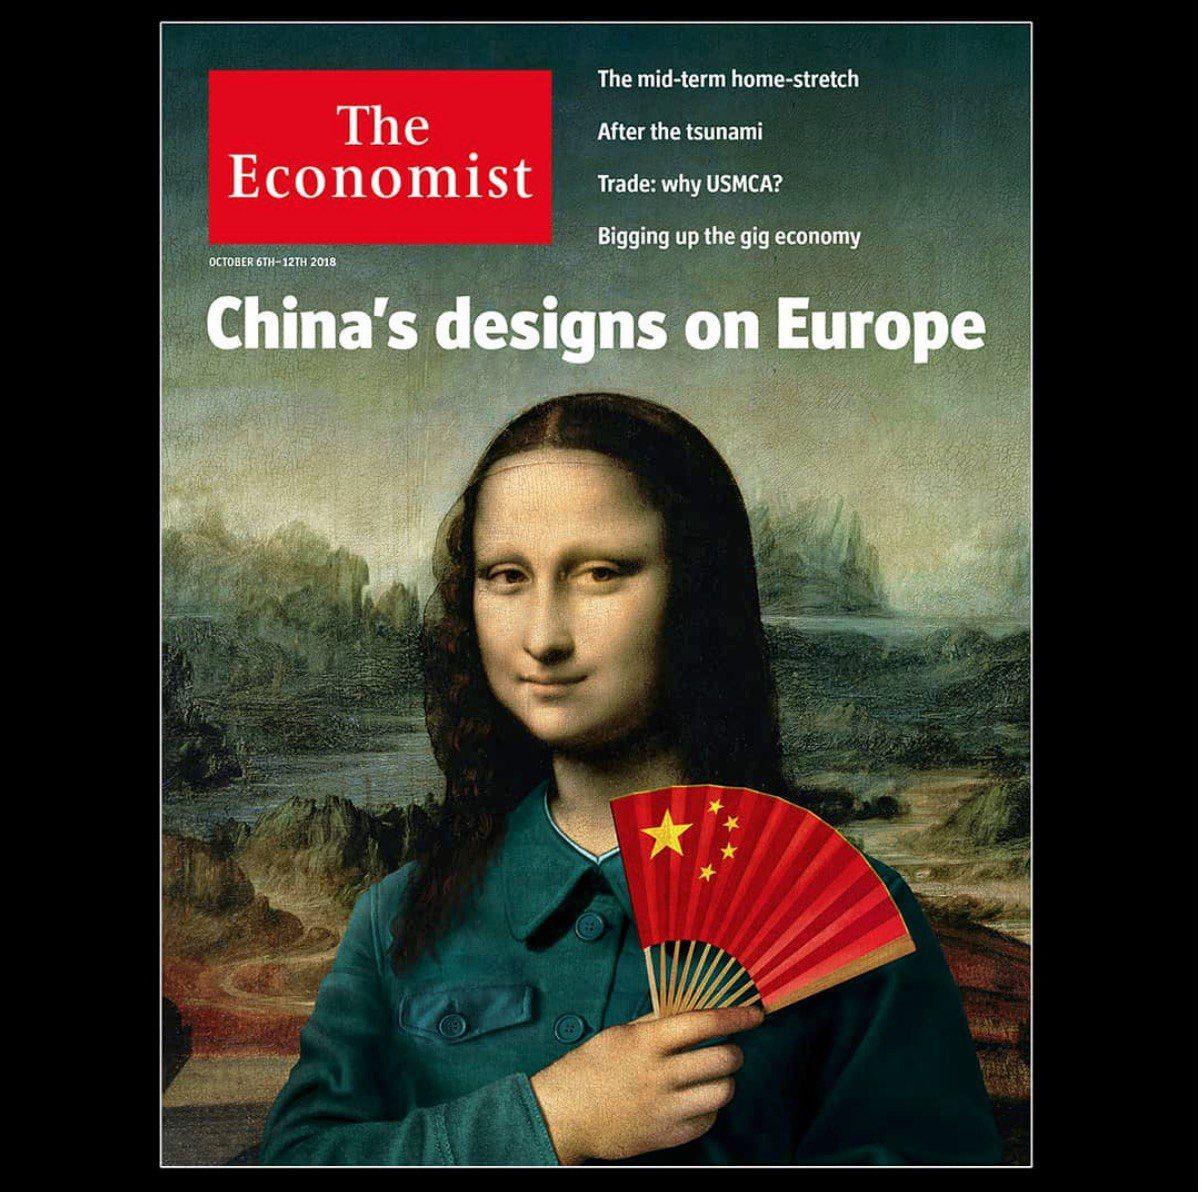 مونالیزای چینی روی جلد  مجله اکونومیست +عکس